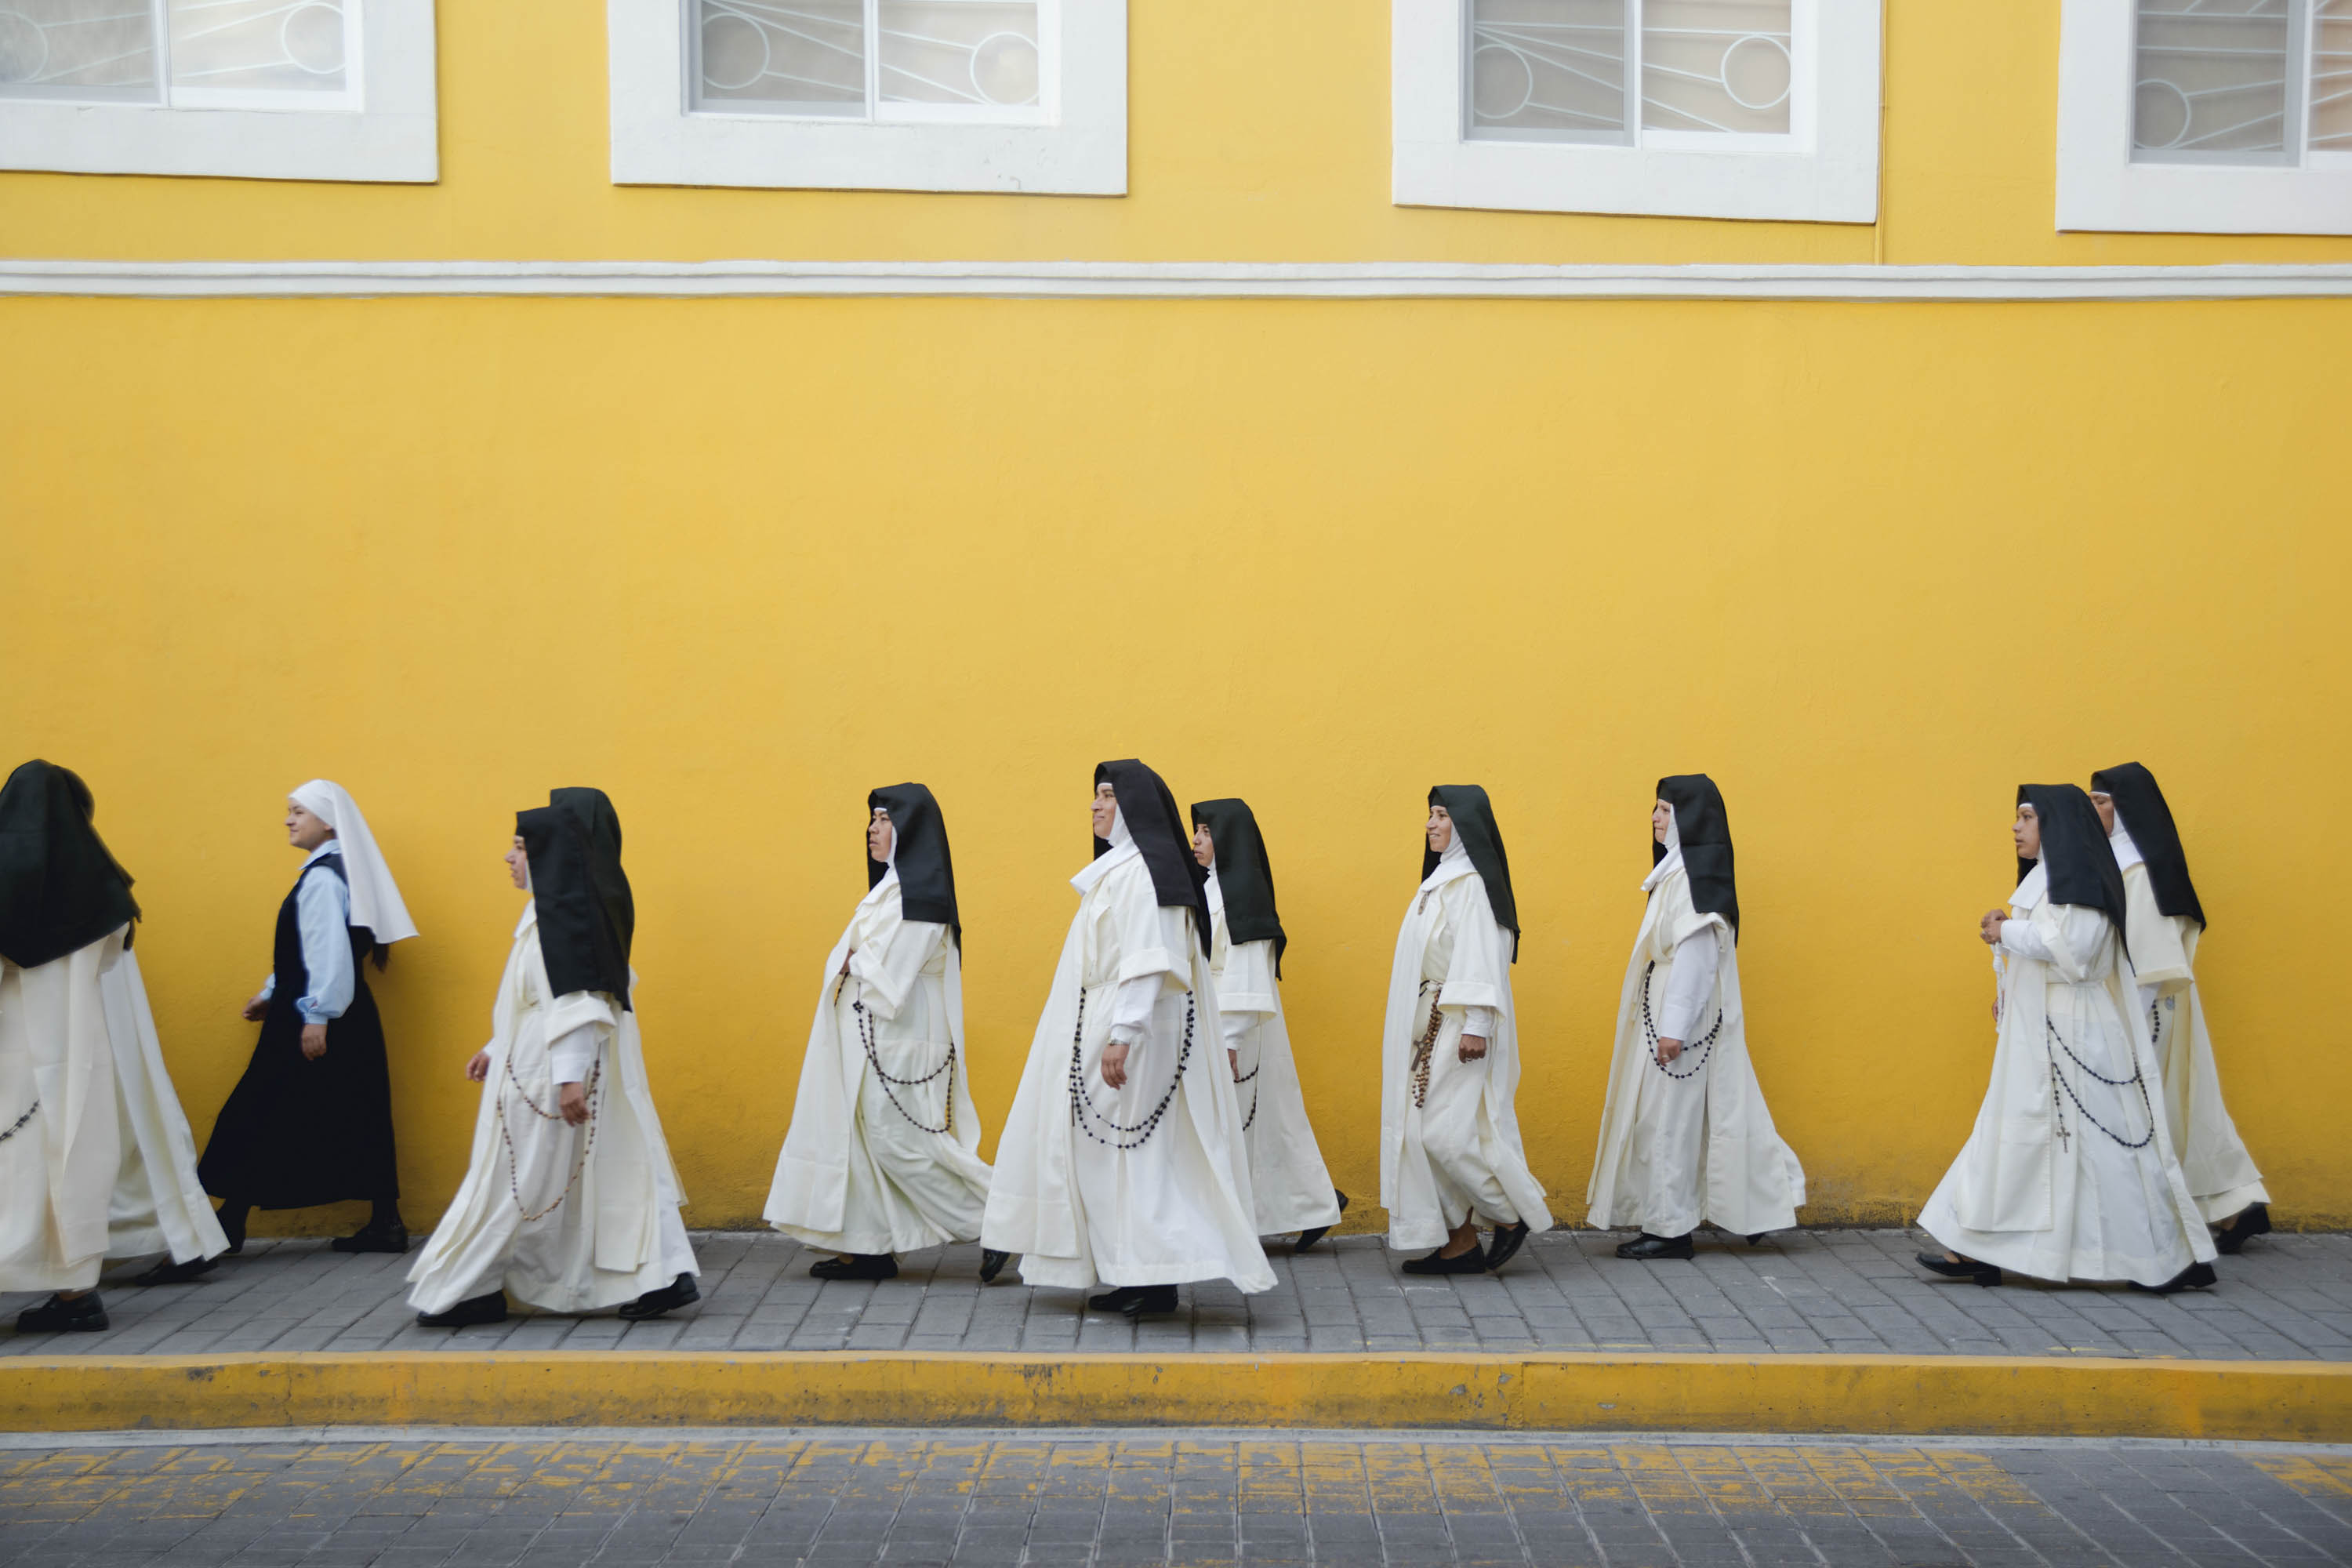 Монахини в монастыре. Жизнь монахинь в женском монастыре. Женский католический монастырь. Католическая монахиня. Жизнь в монастыре истории